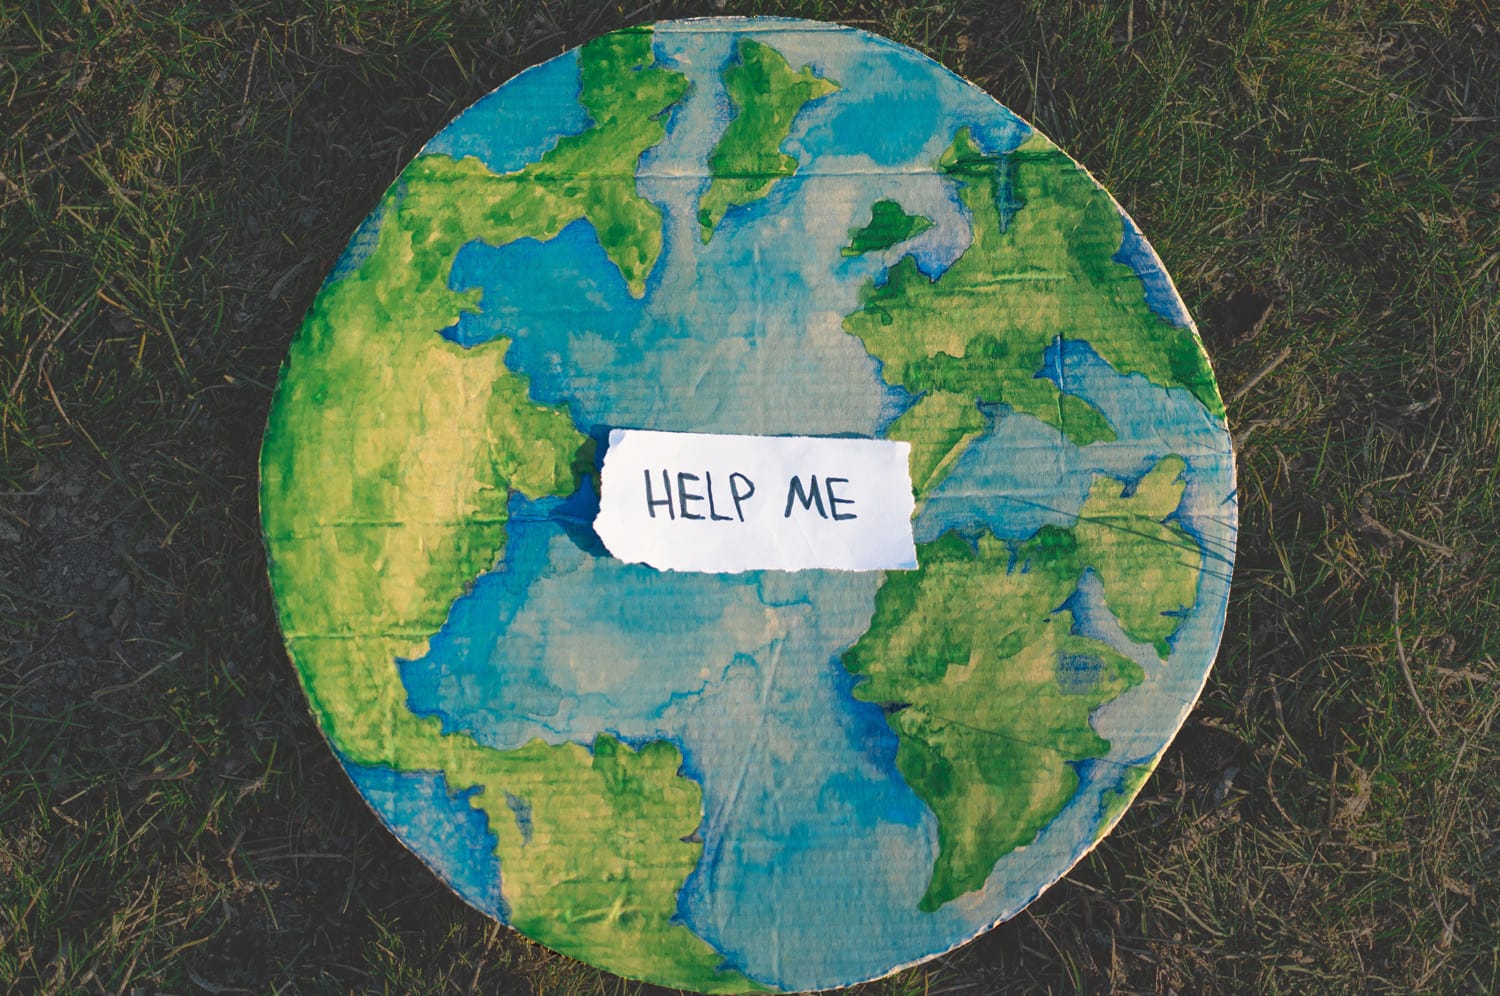 Gemalte Erde mit einem Zettel darauf, auf dem "Help me" steht